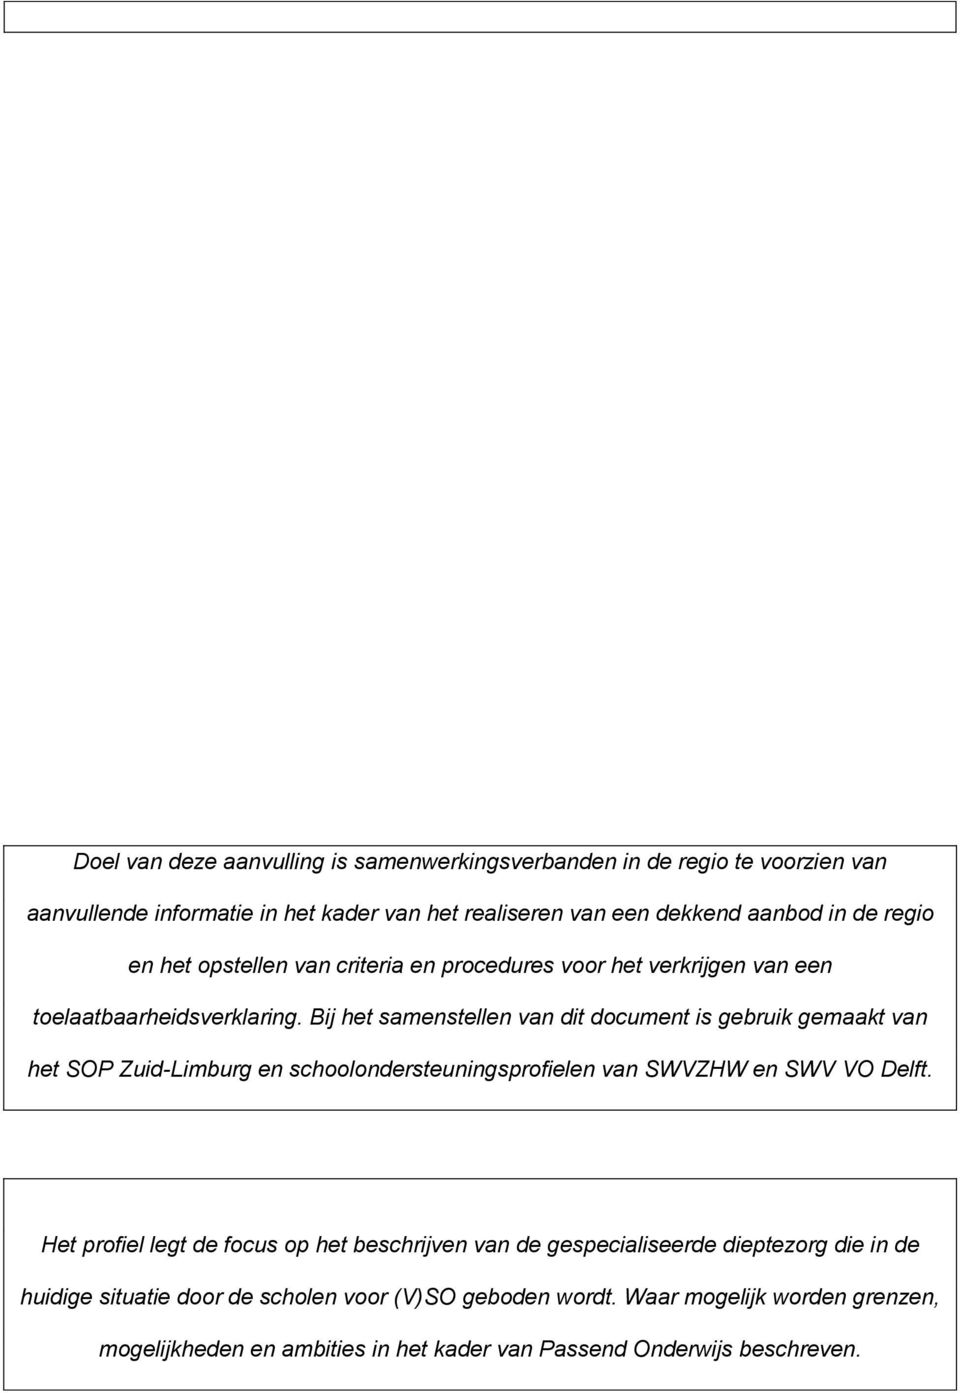 Bij het samenstellen van dit document is gebruik gemaakt van het SOP Zuid-Limburg en schoolondersteuningsprofielen van SWVZHW en SWV VO Delft.